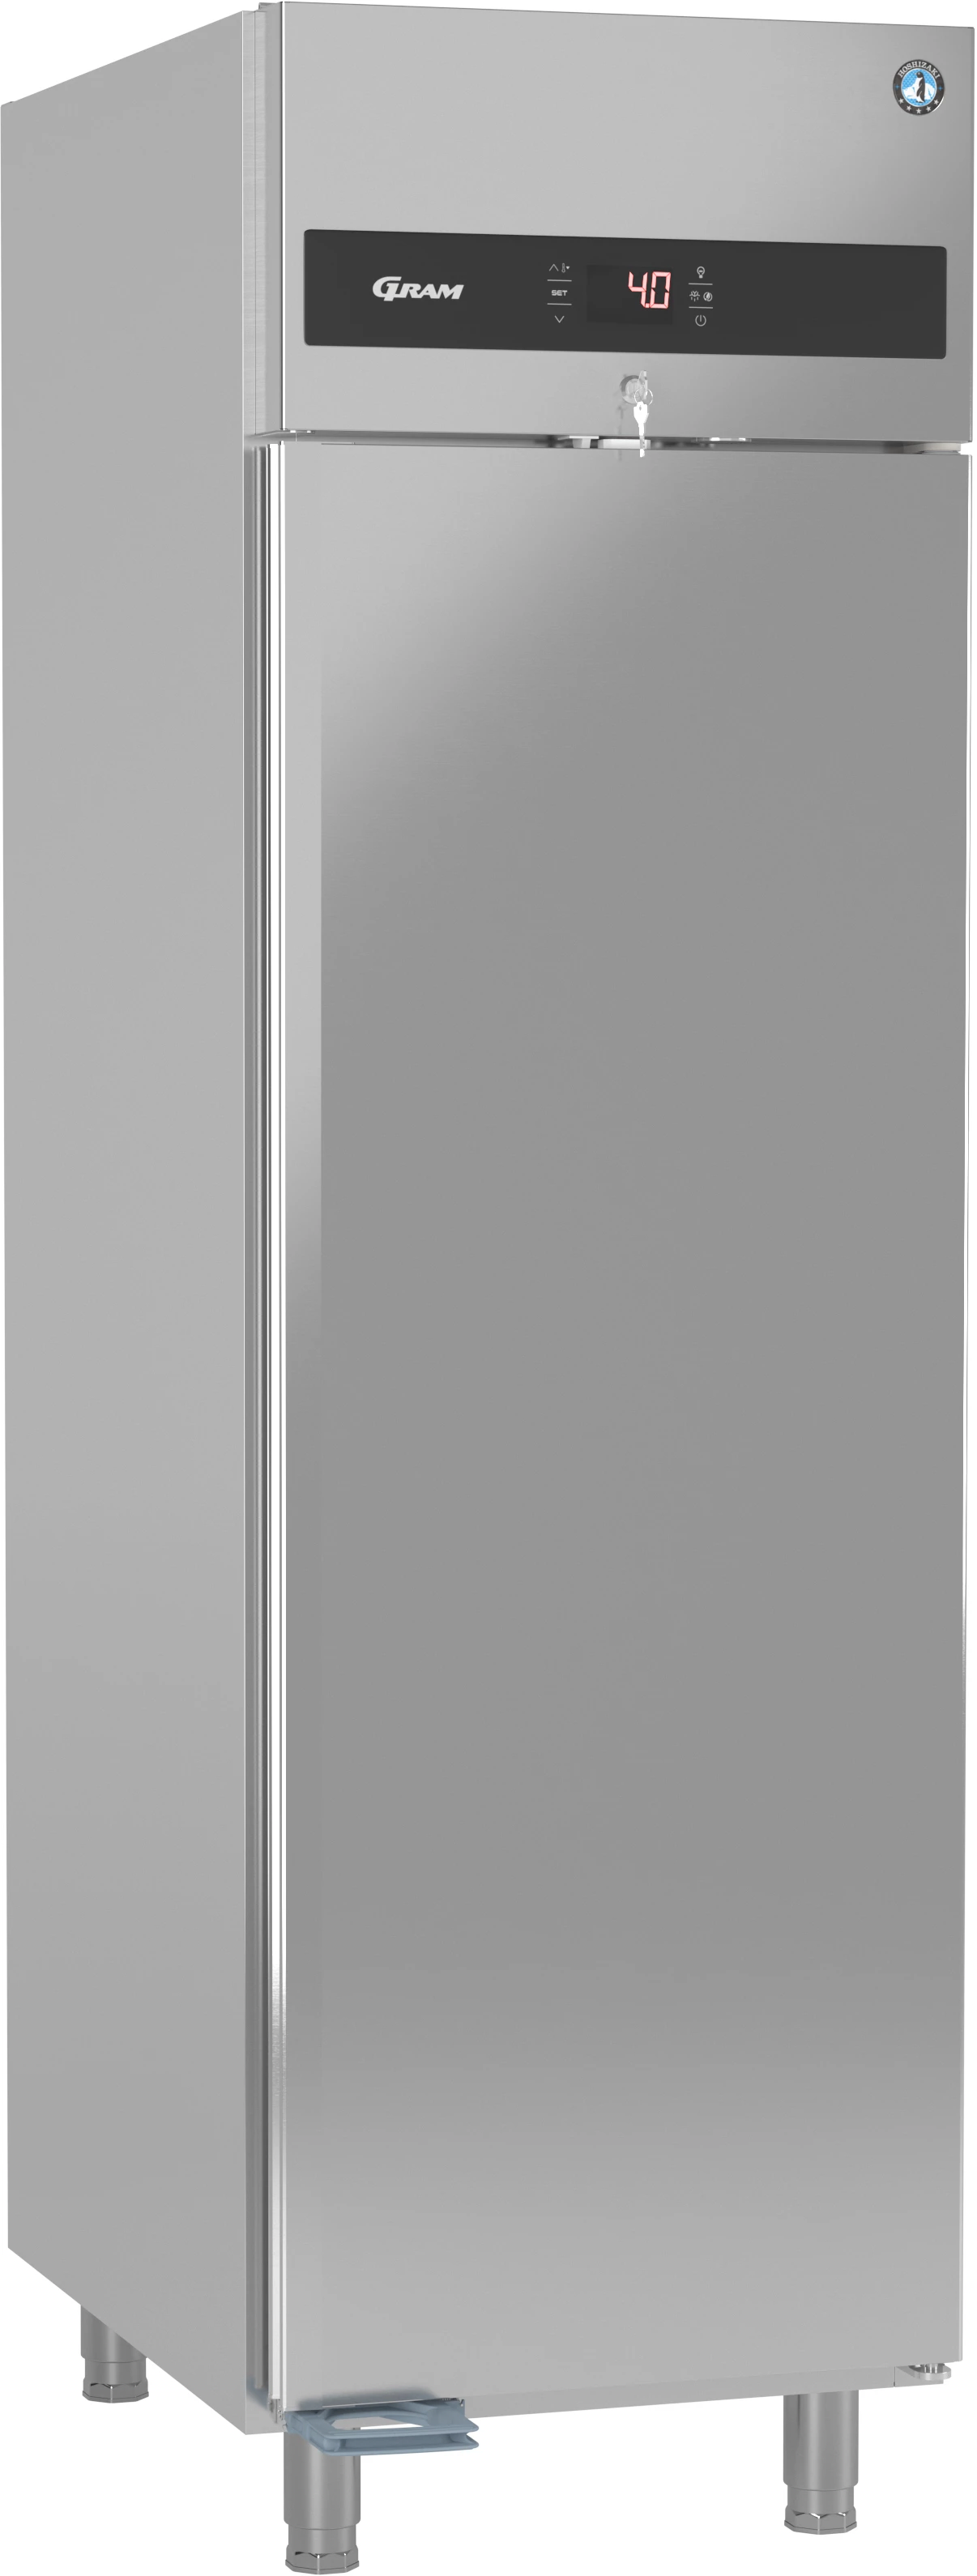 Gram Premier K60 L DR køleskab